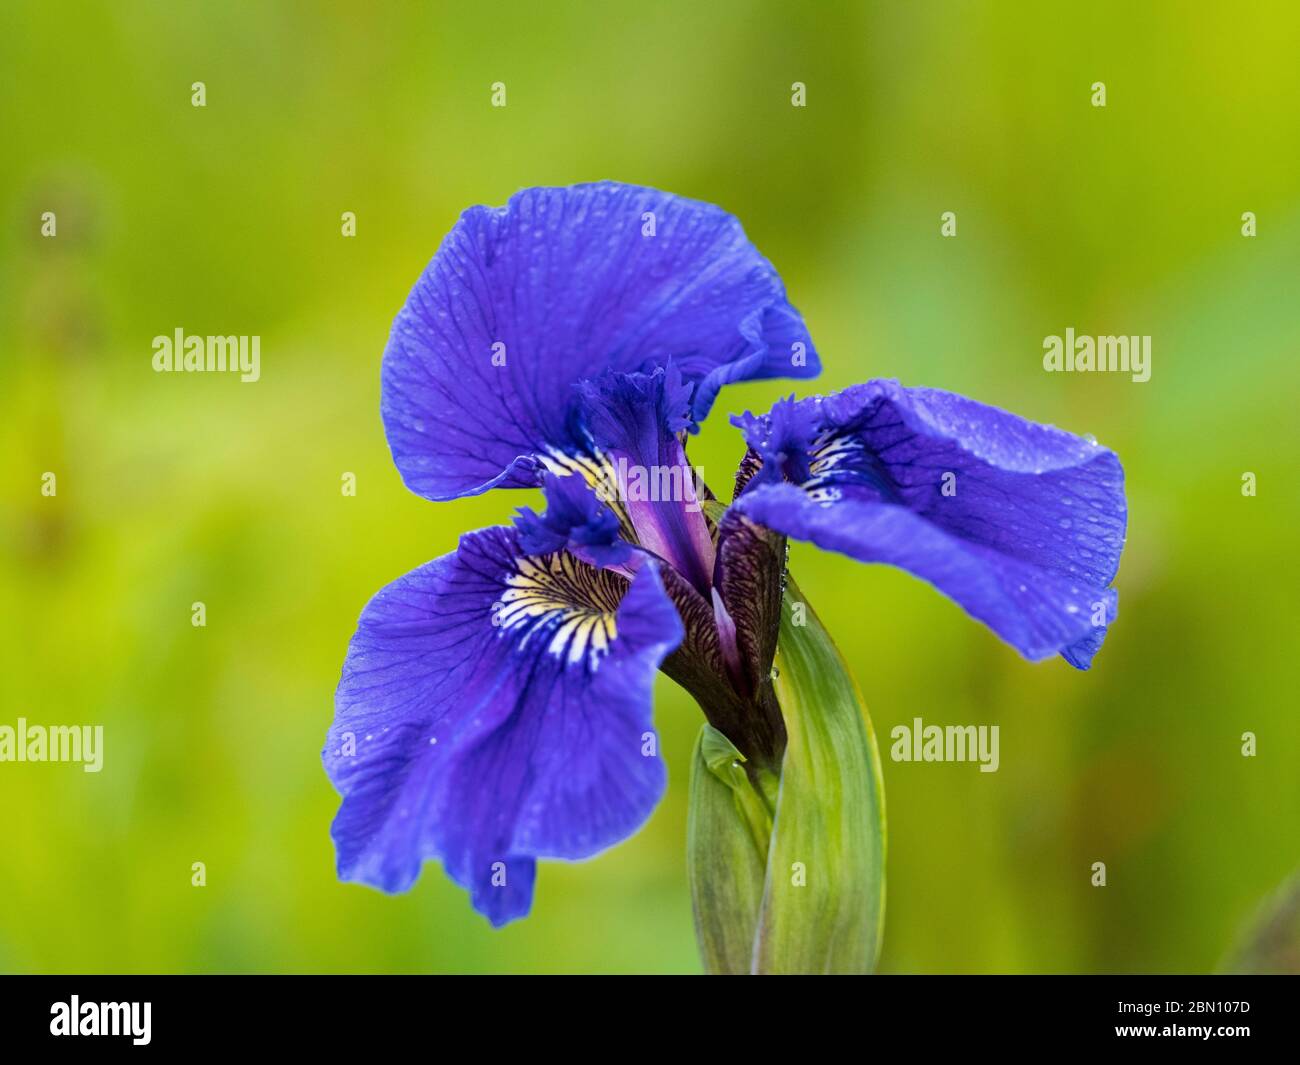 Wild iris, Seward, Alaska. Stock Photo